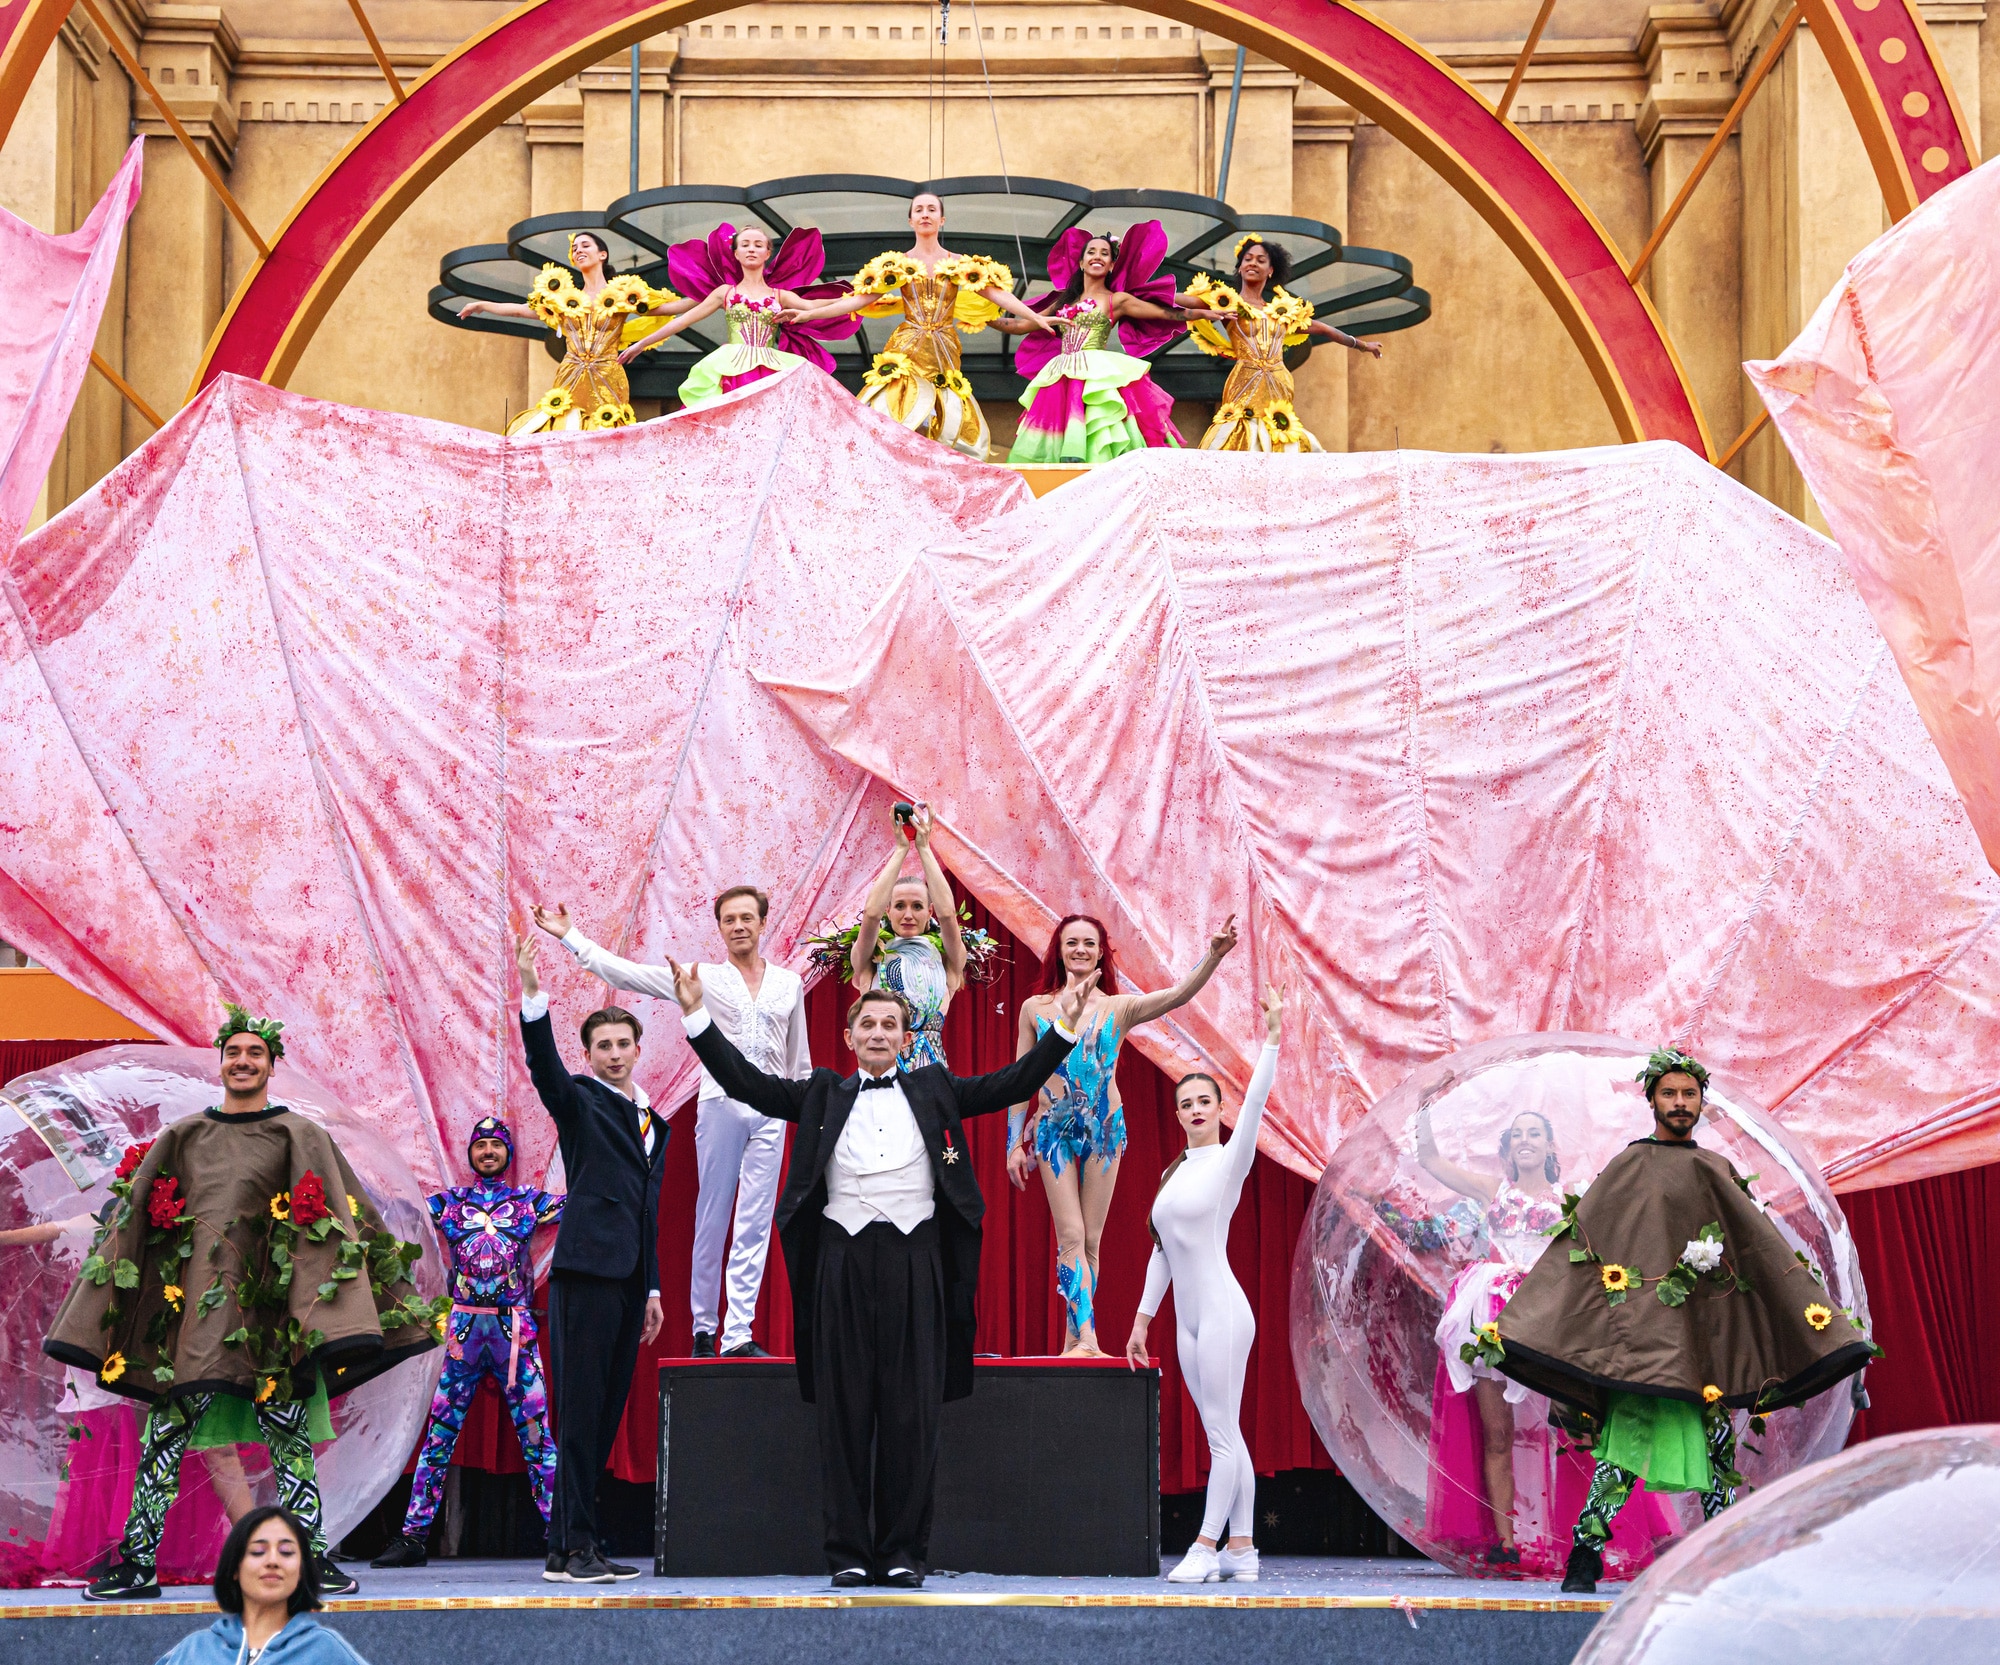 Đoàn xiếc Cirque Du Soleil từng hội tụ tại Sun World Ba Na Hills sẽ biểu diễn tại Da Nang Downtown - Ảnh: T. NGHĨA